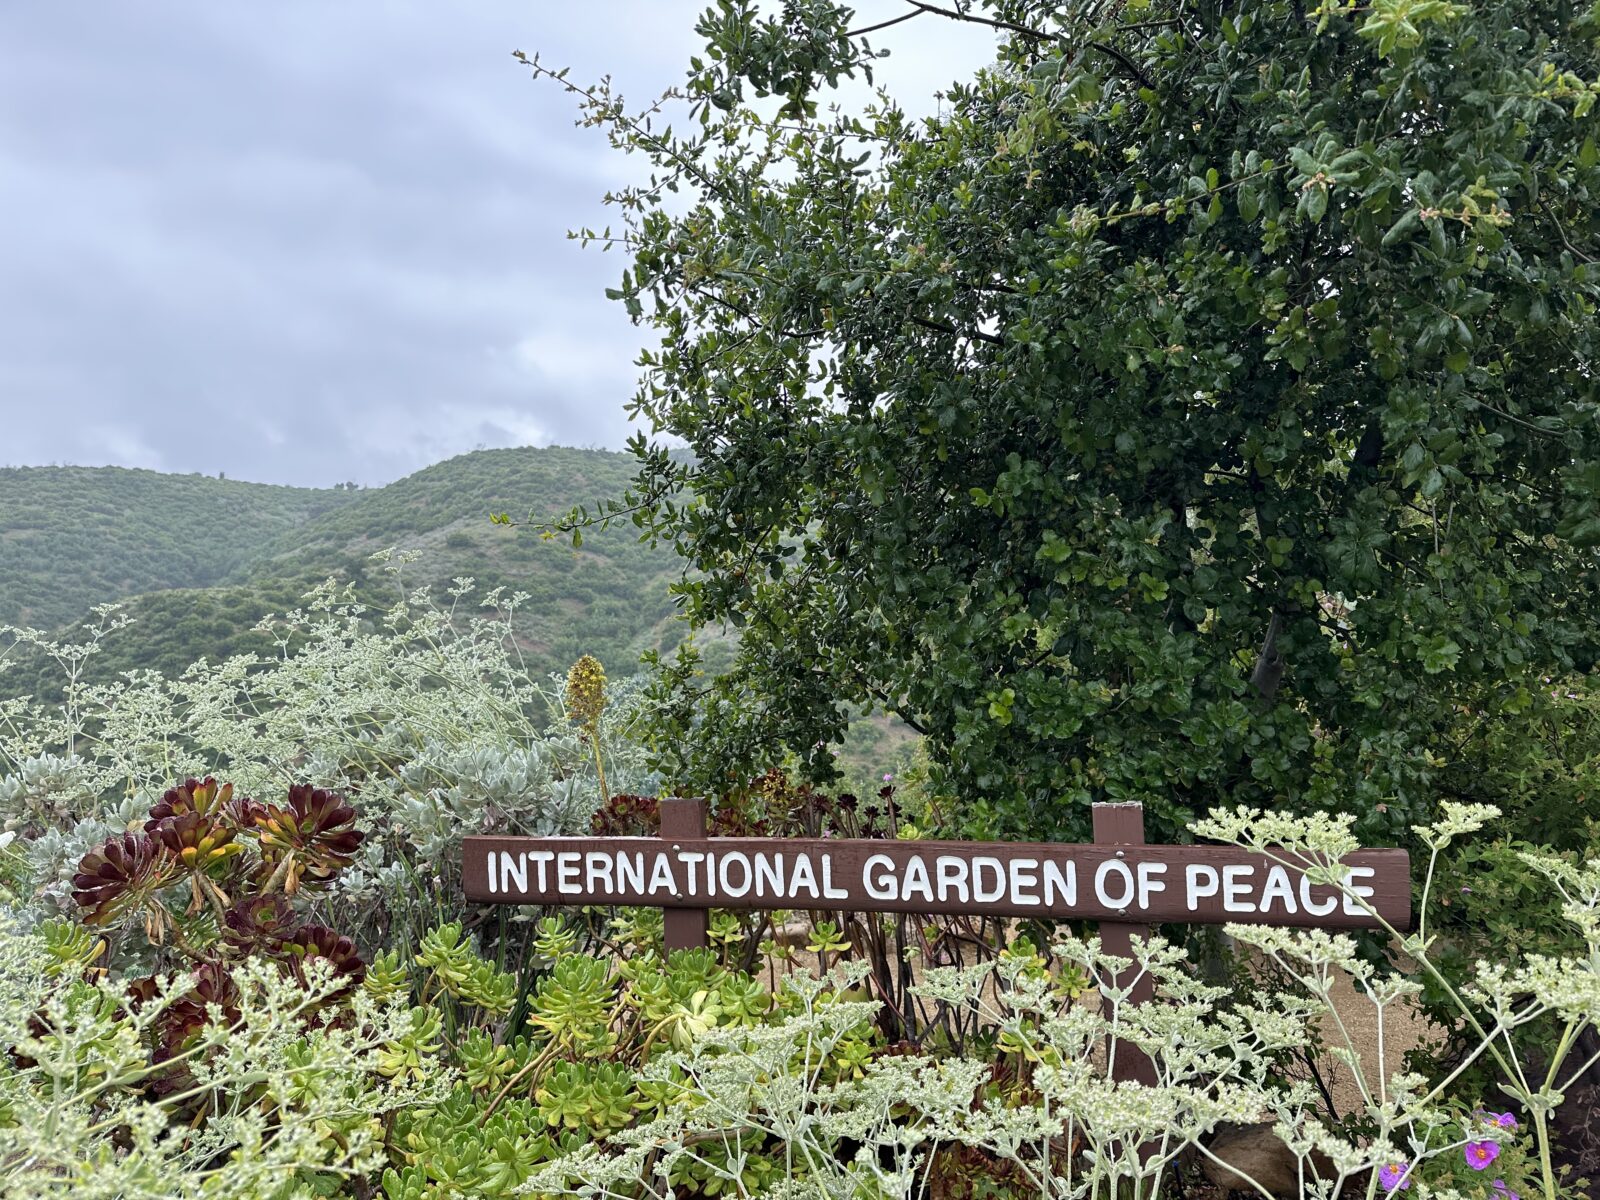 International Garden of Peace